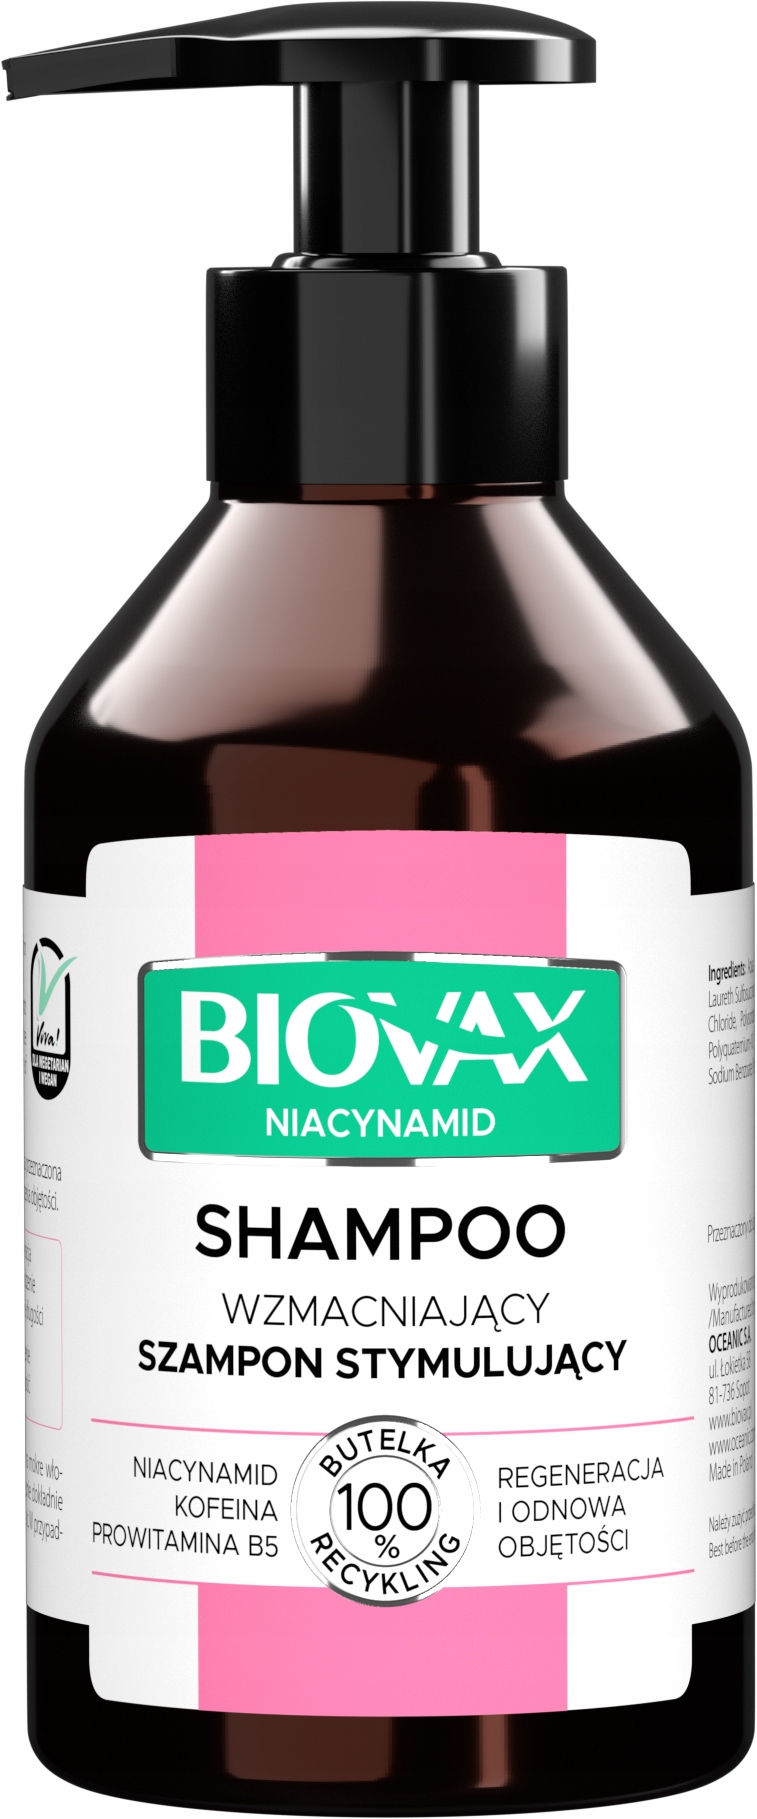 biovax regenerujący szampon micelarny włosy osłabione